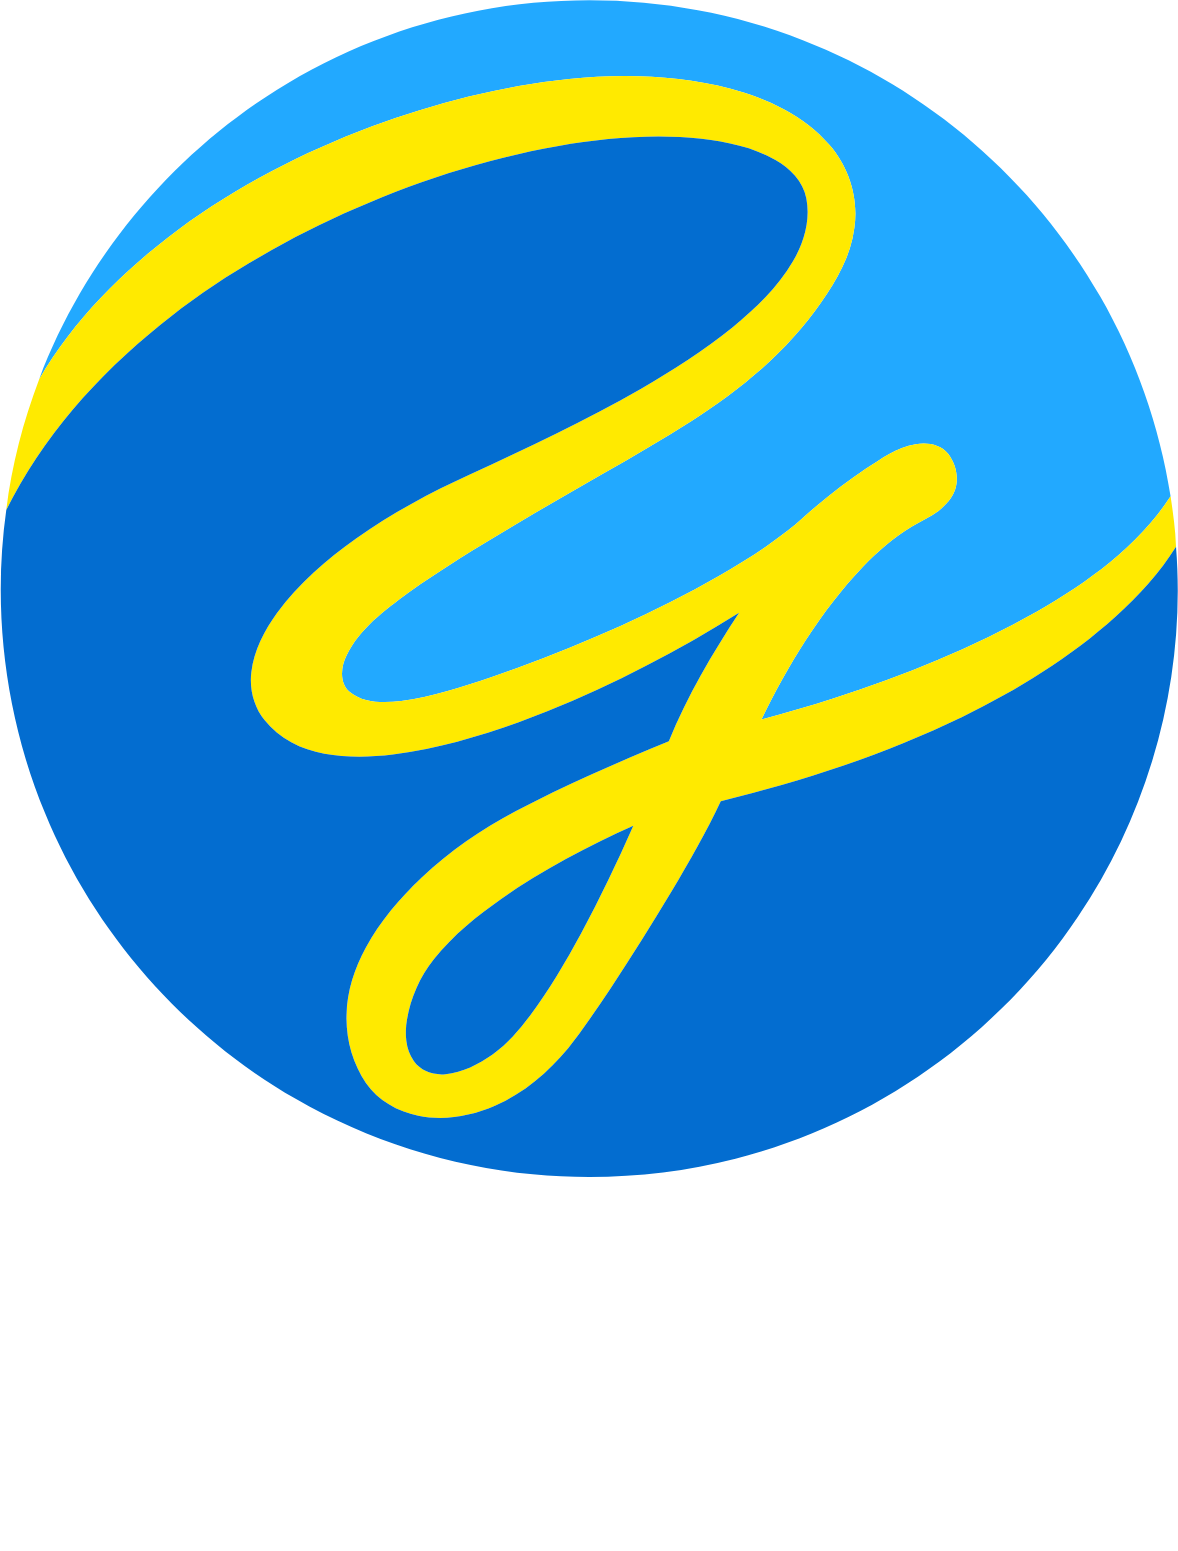 Yuke's logo grand pour les fonds sombres (PNG transparent)